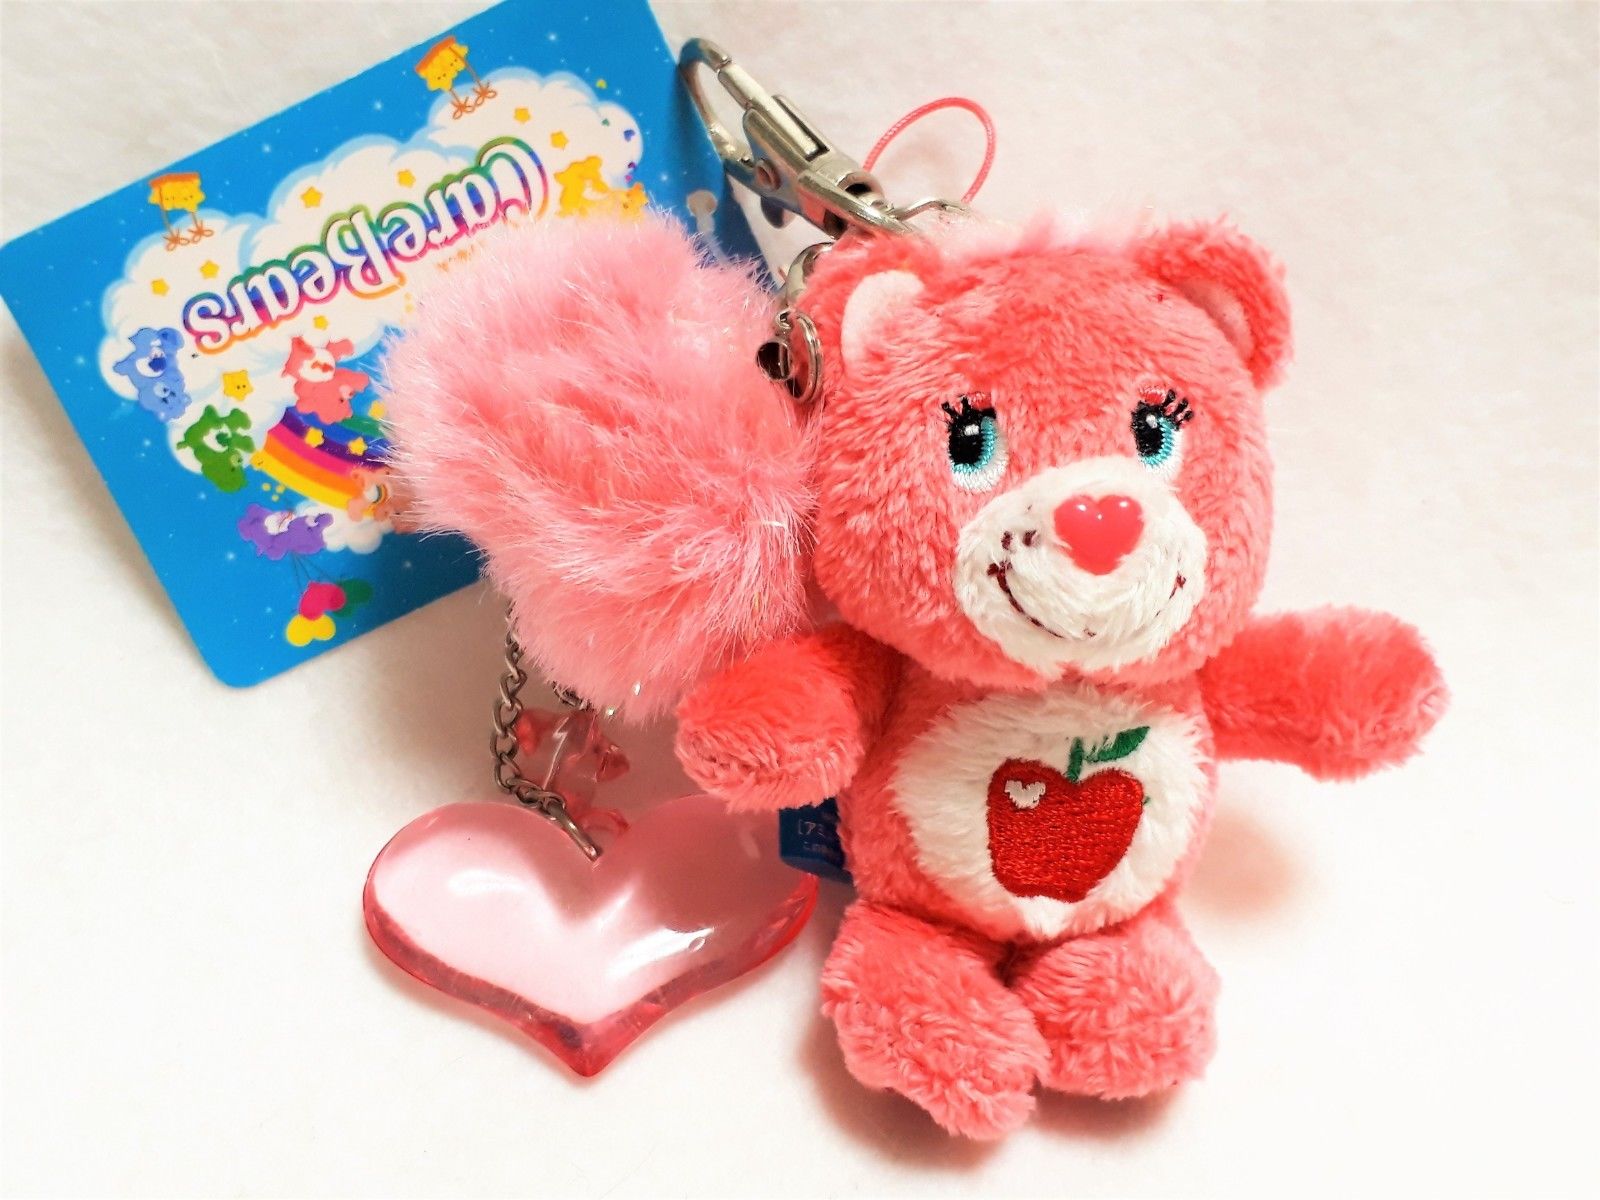 Care Bears Smart Heart Bear Mascot Key ring Charm Plush SEGA Promo